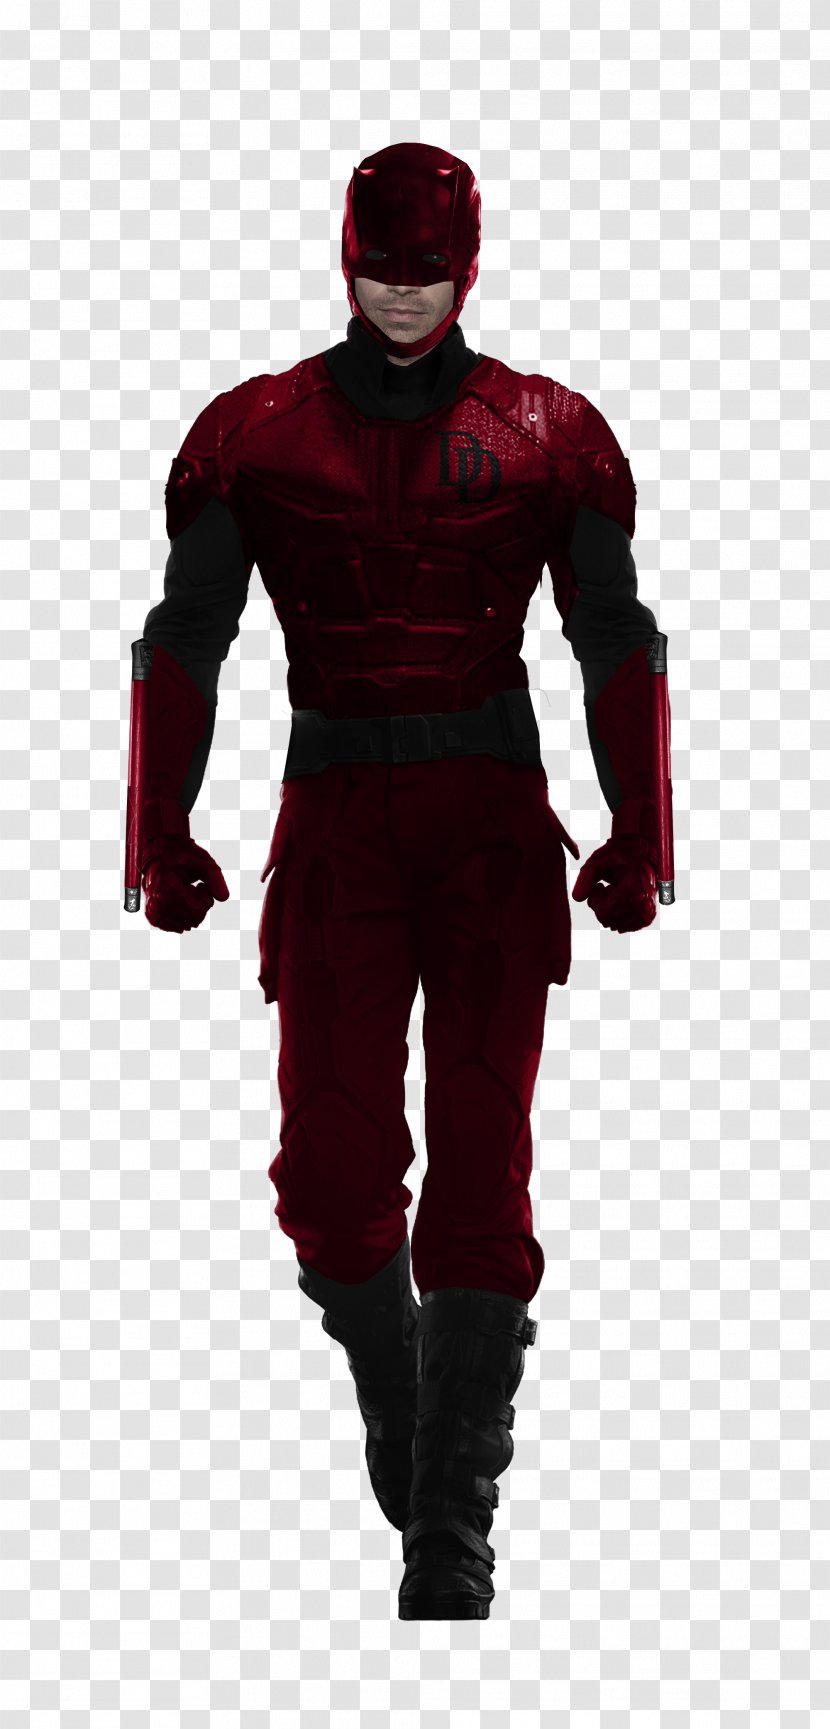 Marvel: Avengers Alliance Daredevil Bullseye Luke Cage Jessica Jones - Marvel Cinematic Universe Transparent PNG